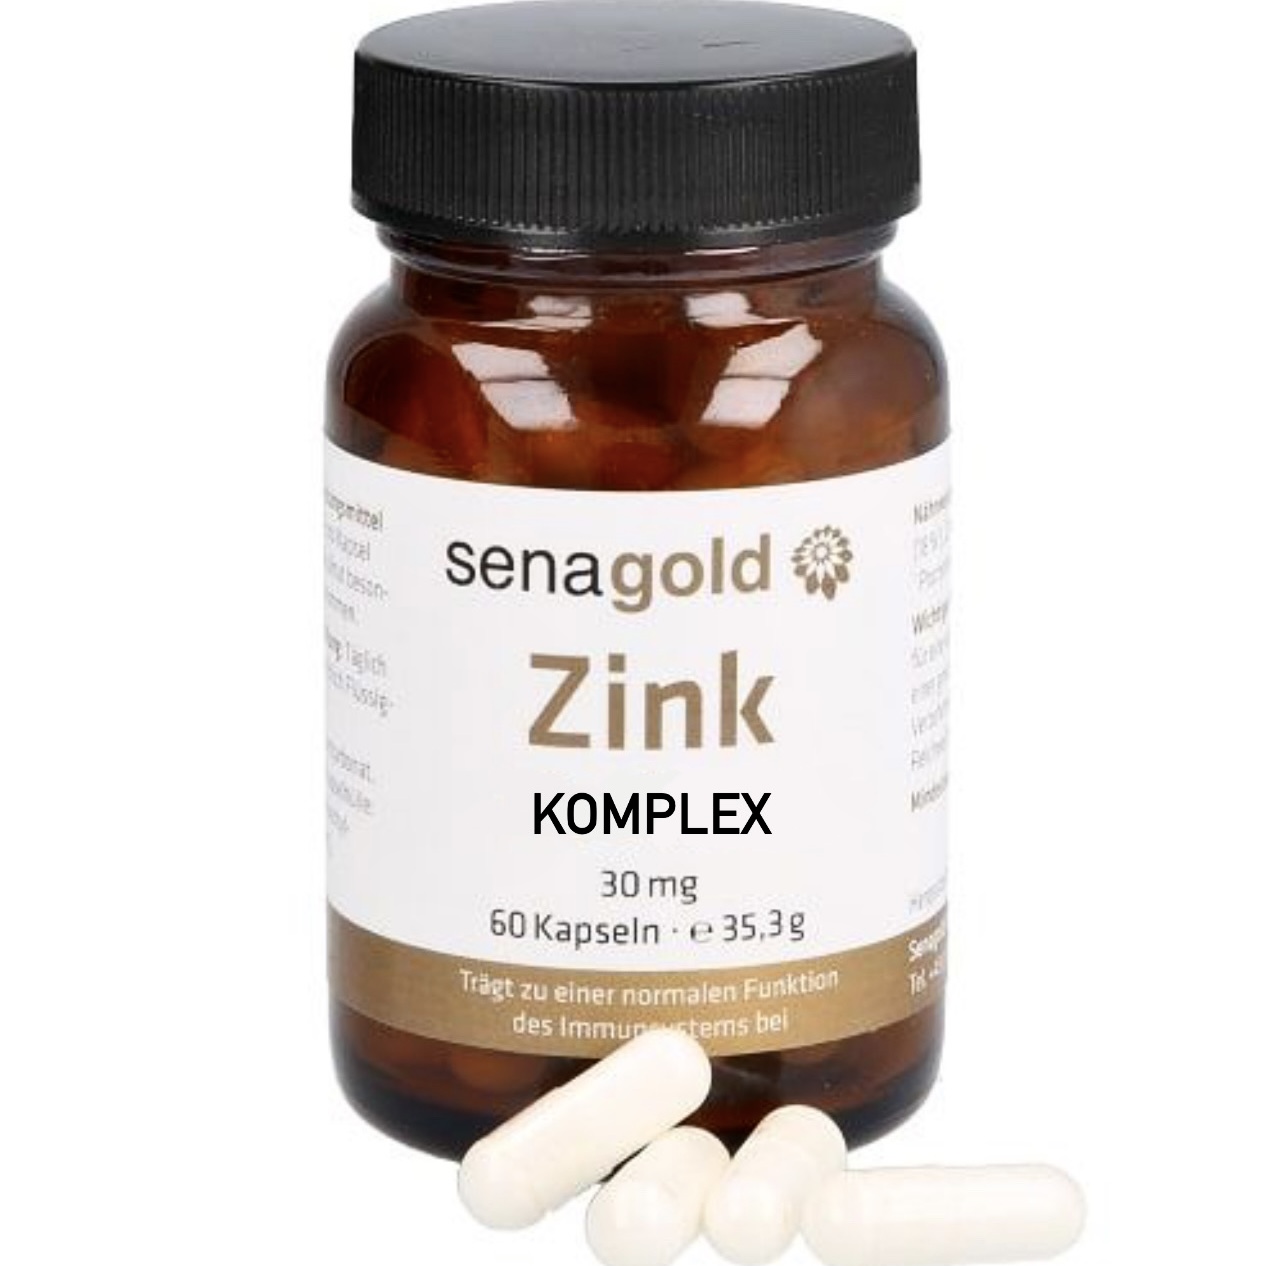 Senagold Zink Komplex Kapseln 30 mg - 3 x 60 St.